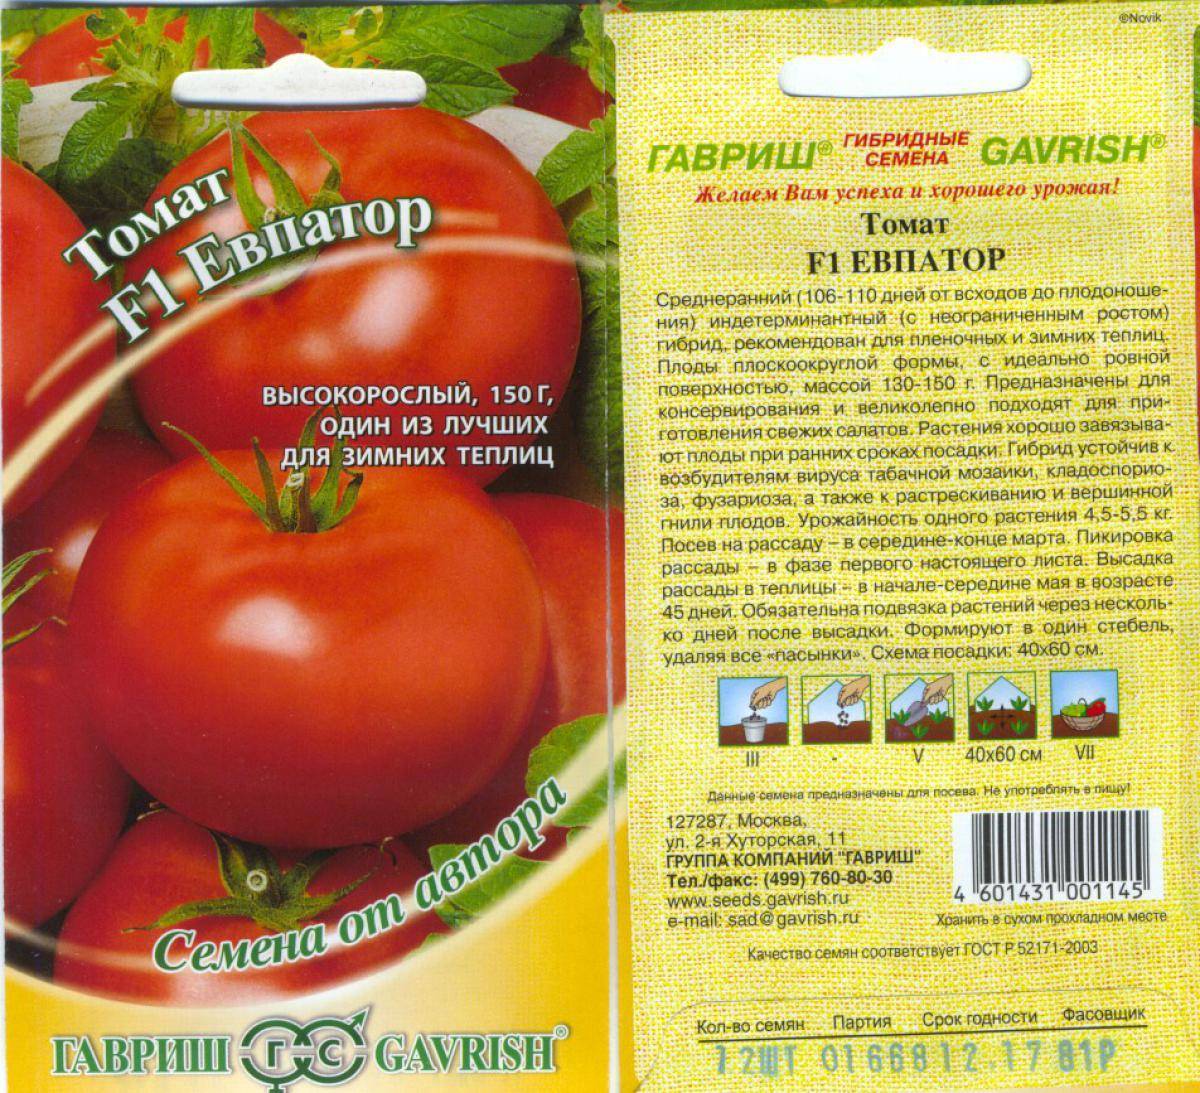 Позднеспелые сорта томатов: подробный перечень разновидностей помидор с описанием урожайности и рекомендациями по выращиванию в теплицах и открытом грунте русский фермер